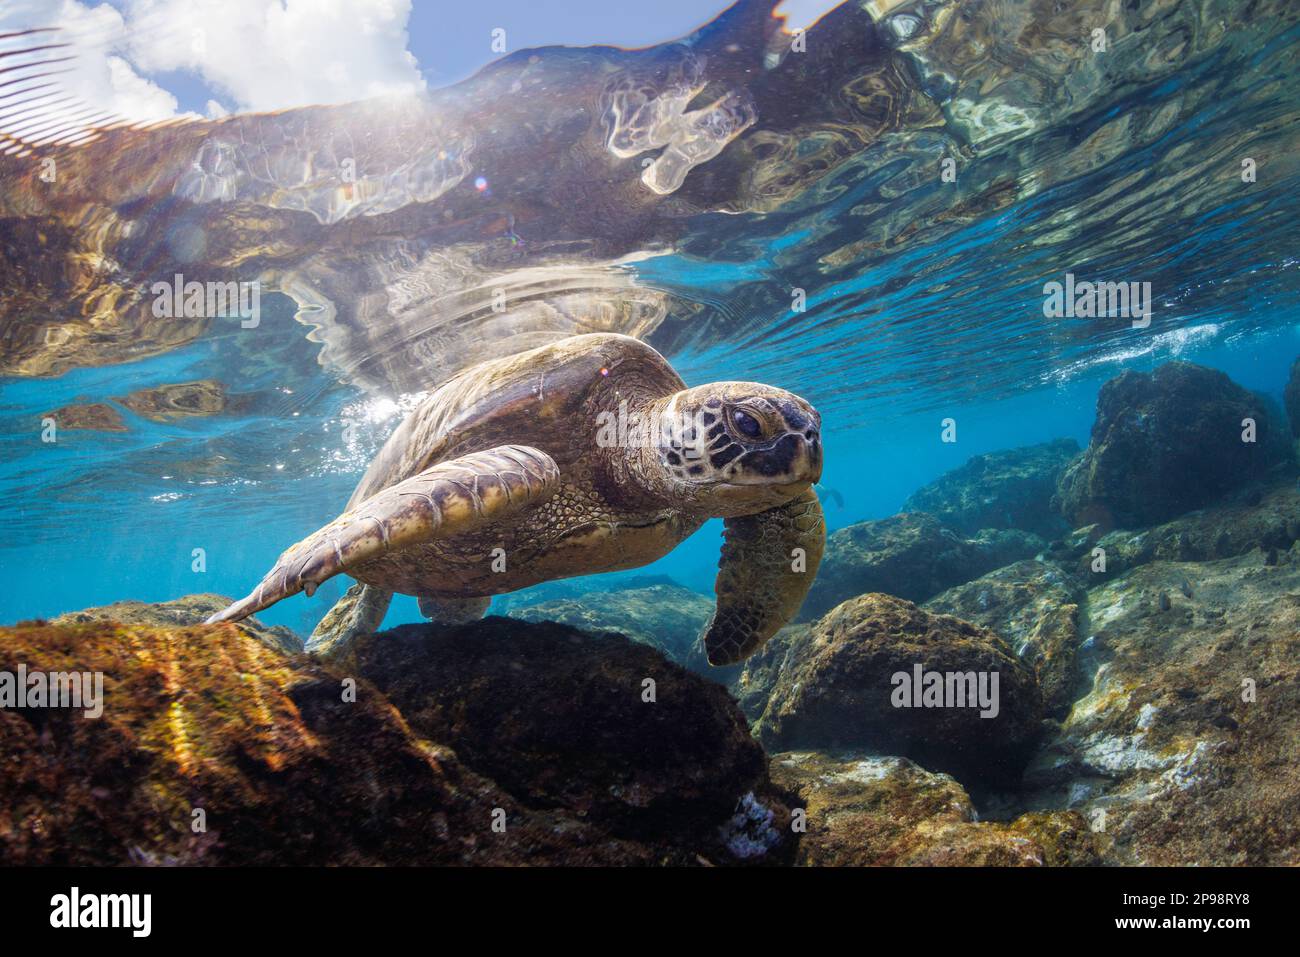 Eine grüne Meeresschildkröte, Chelonia mydas, eine vom Aussterben bedrohte Art, sucht in den flachen Gebieten von West Maui, Hawaii nach Algen zum Essen. Stockfoto